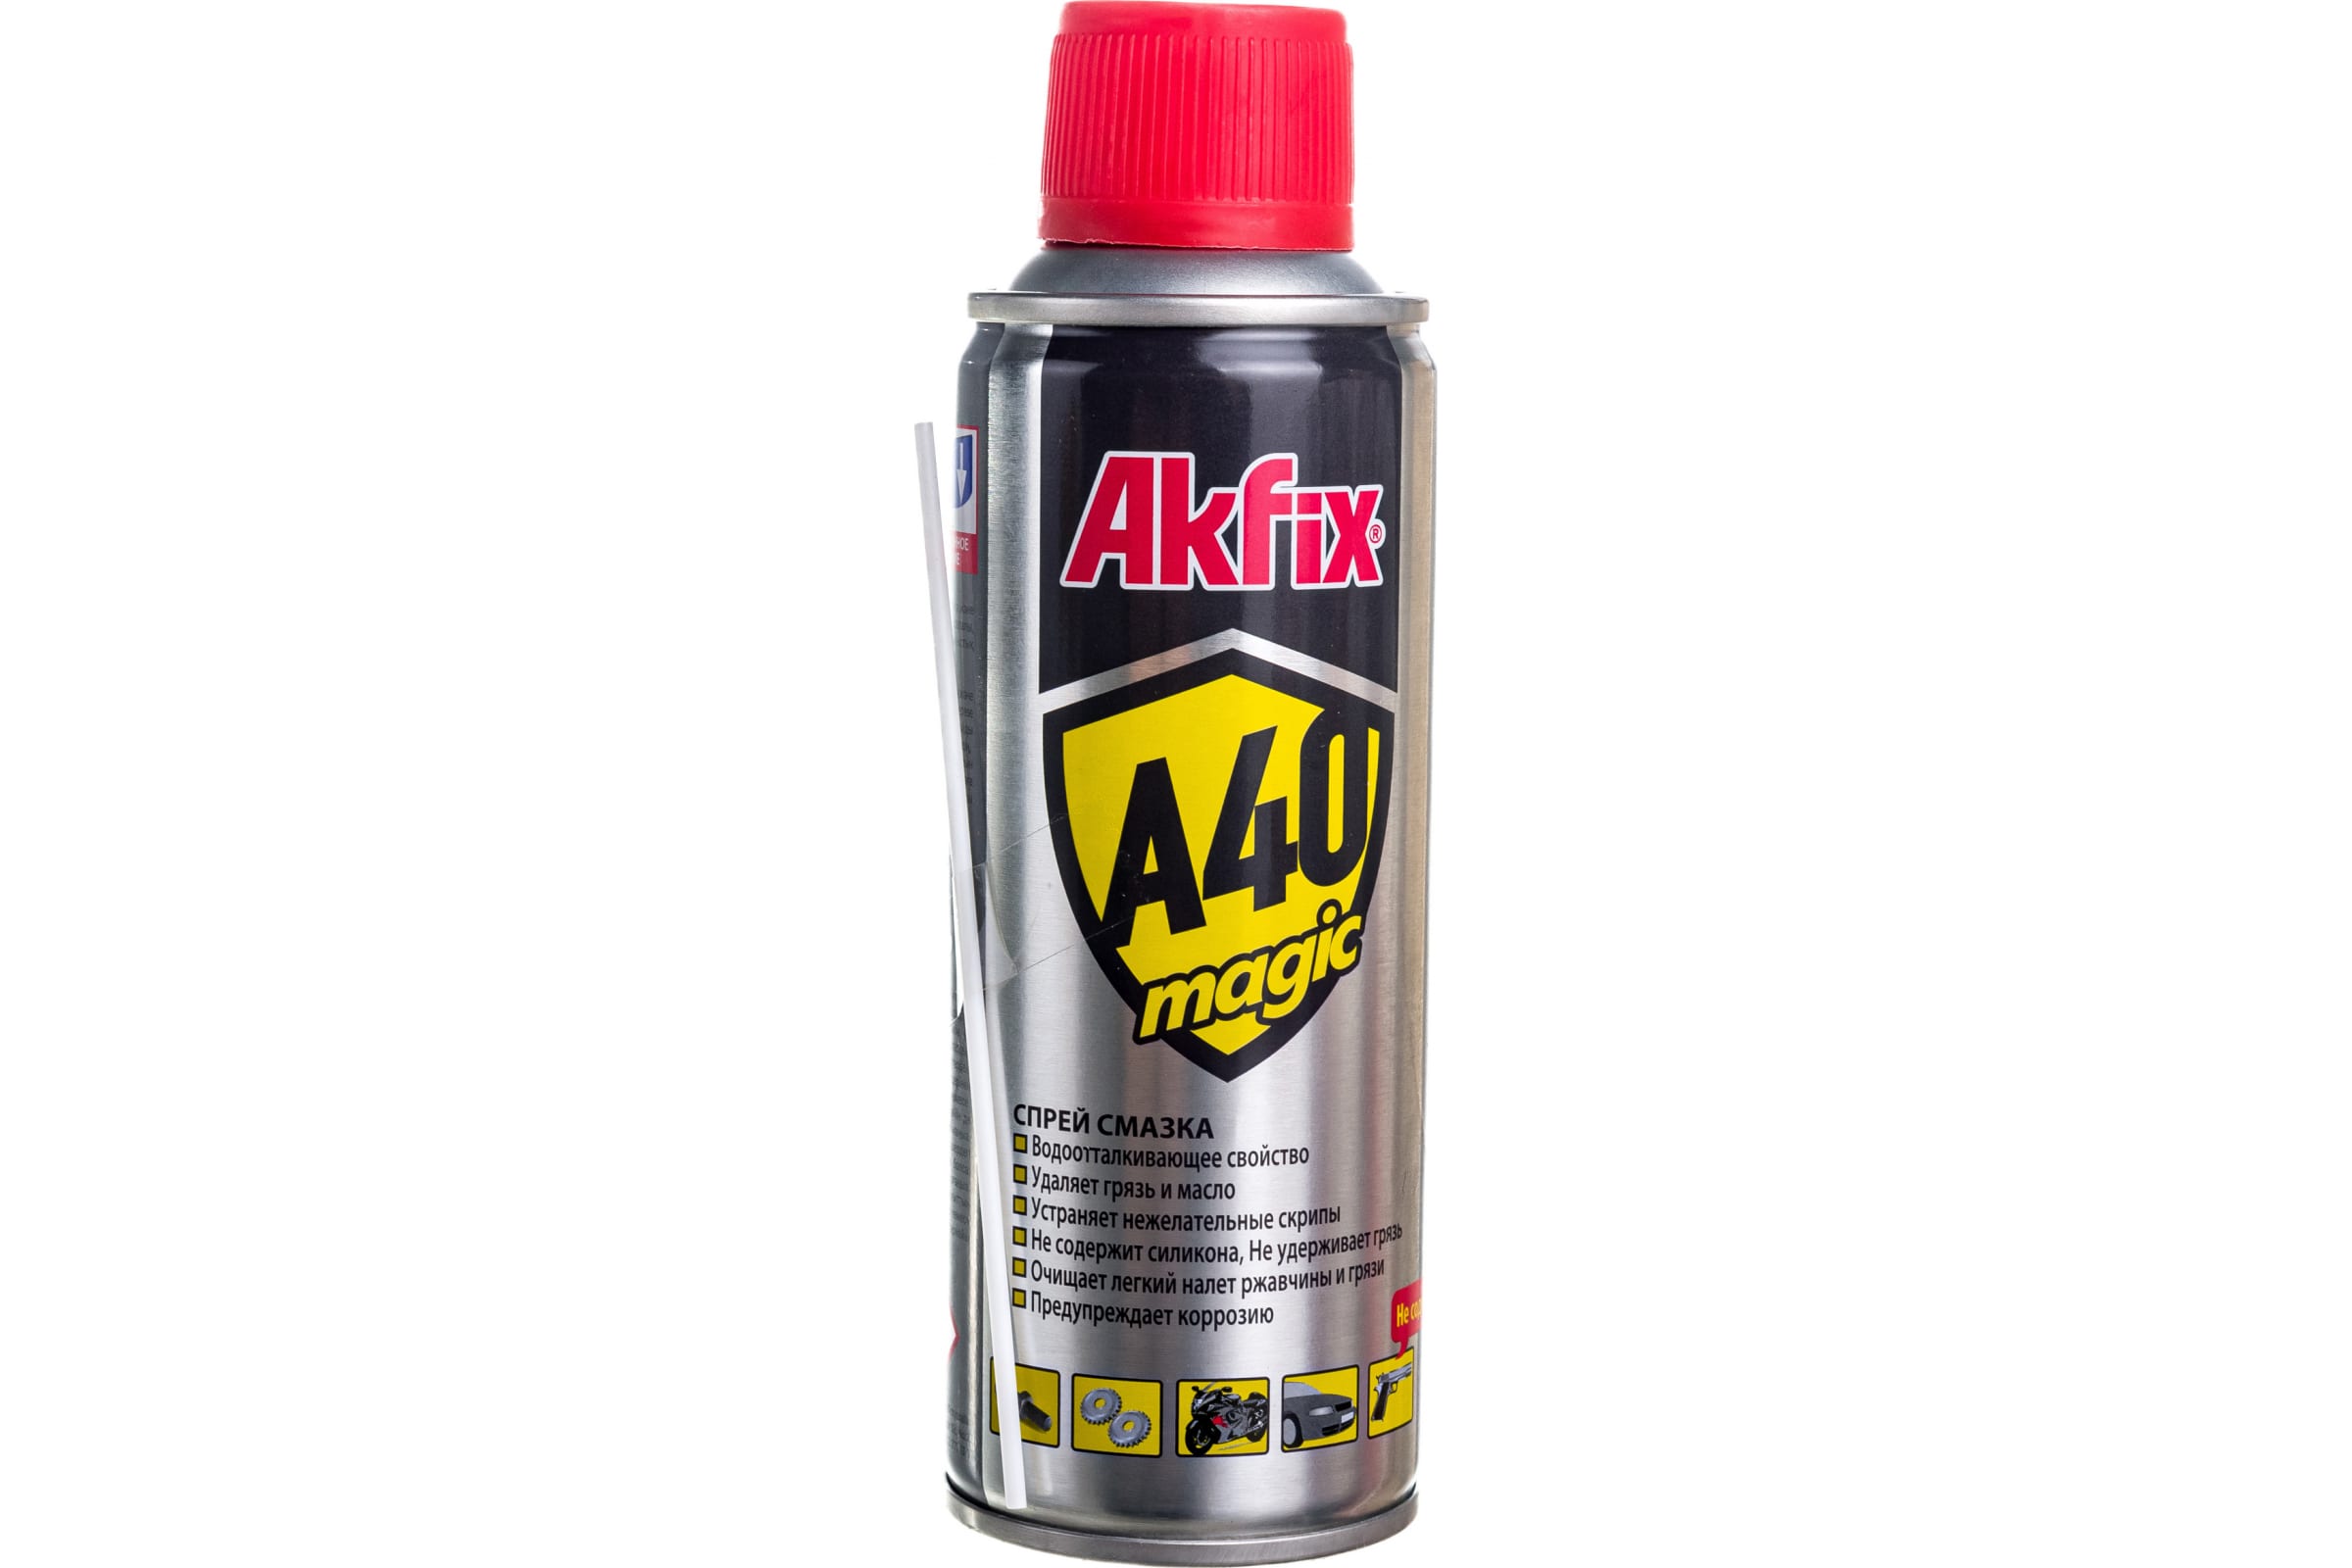 Akfix Универсальная смазка A40 Magic, 200 мл YA420 универсальная силиконовая смазка kerry